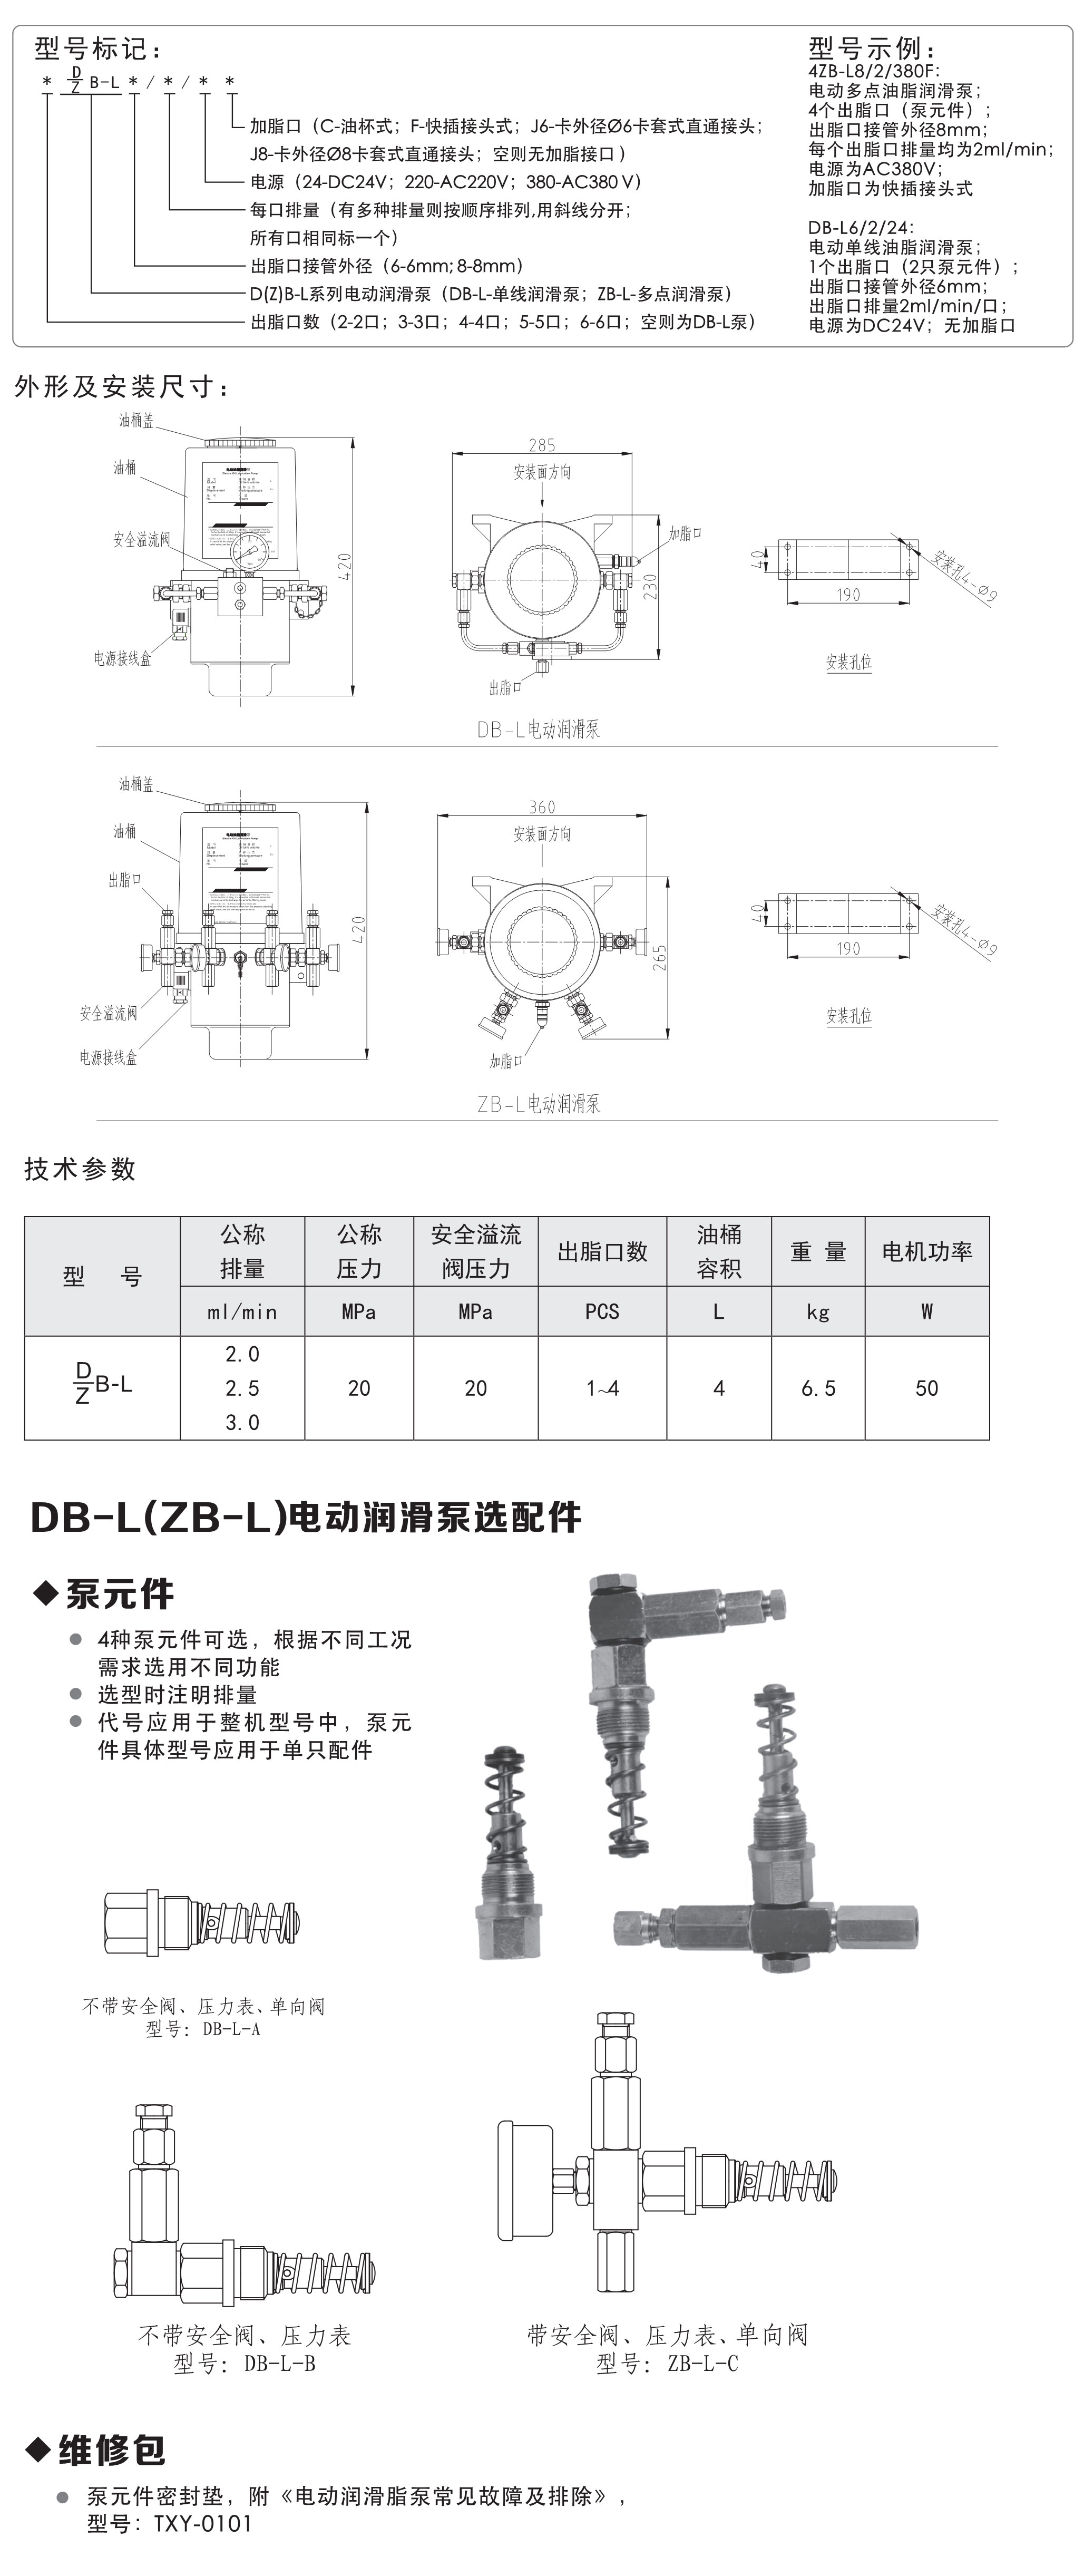 DB-L电动润滑泵